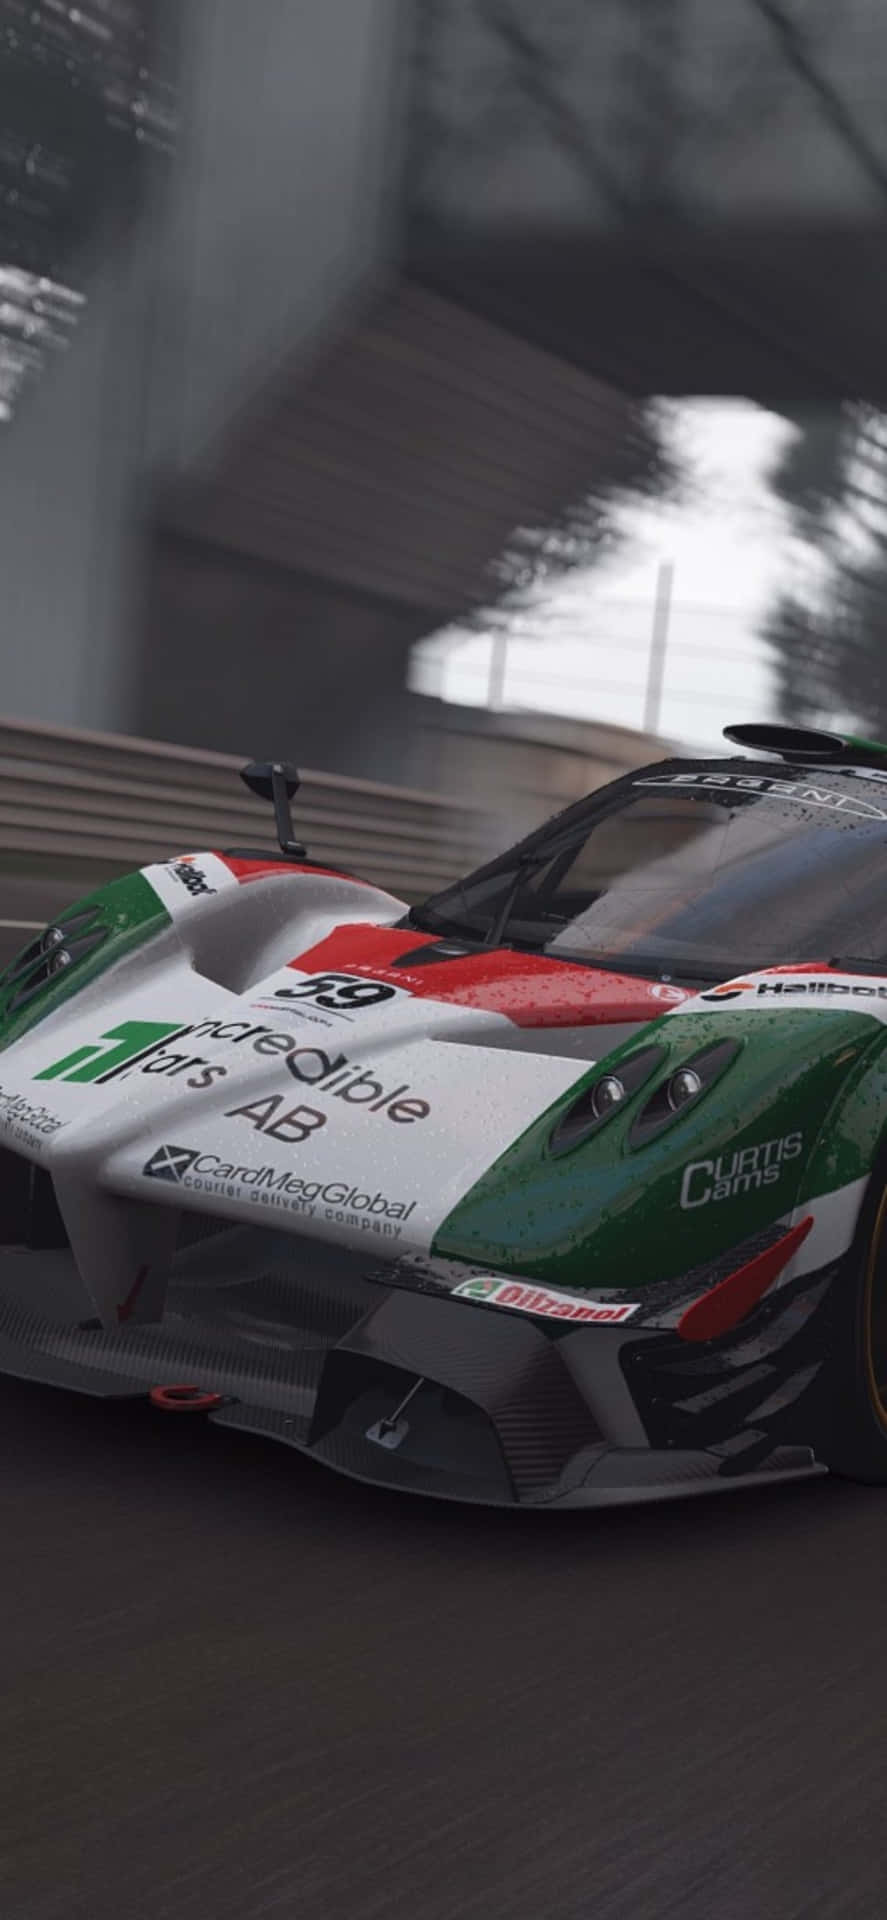 Iphonex Bakgrundsbild Av Italiensk Racerbil Från Project Cars.